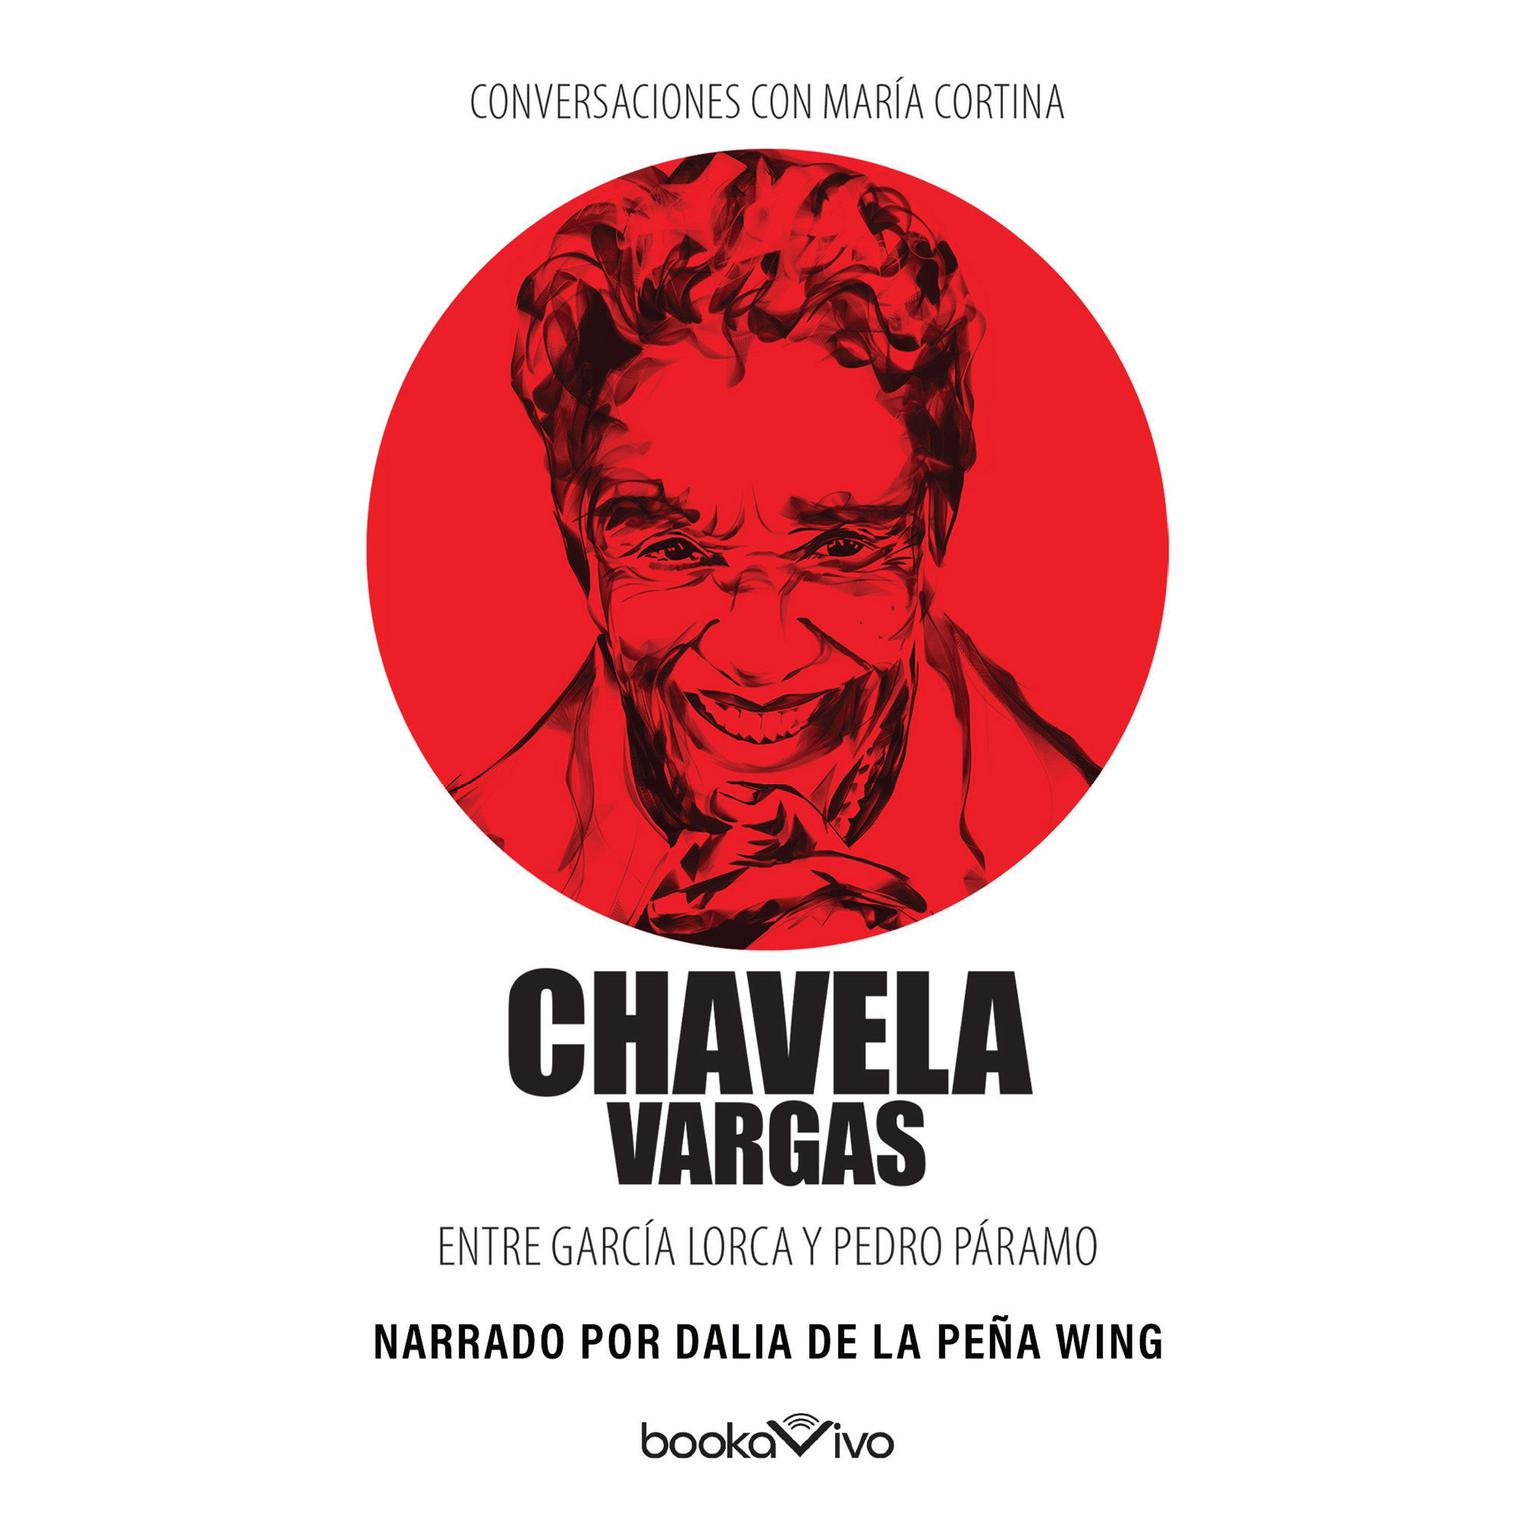 Conversaciones con María Cortina: Chavela Vargas Entre García Lorca y Pedro Páramo Audiobook, by Chavela Vargas